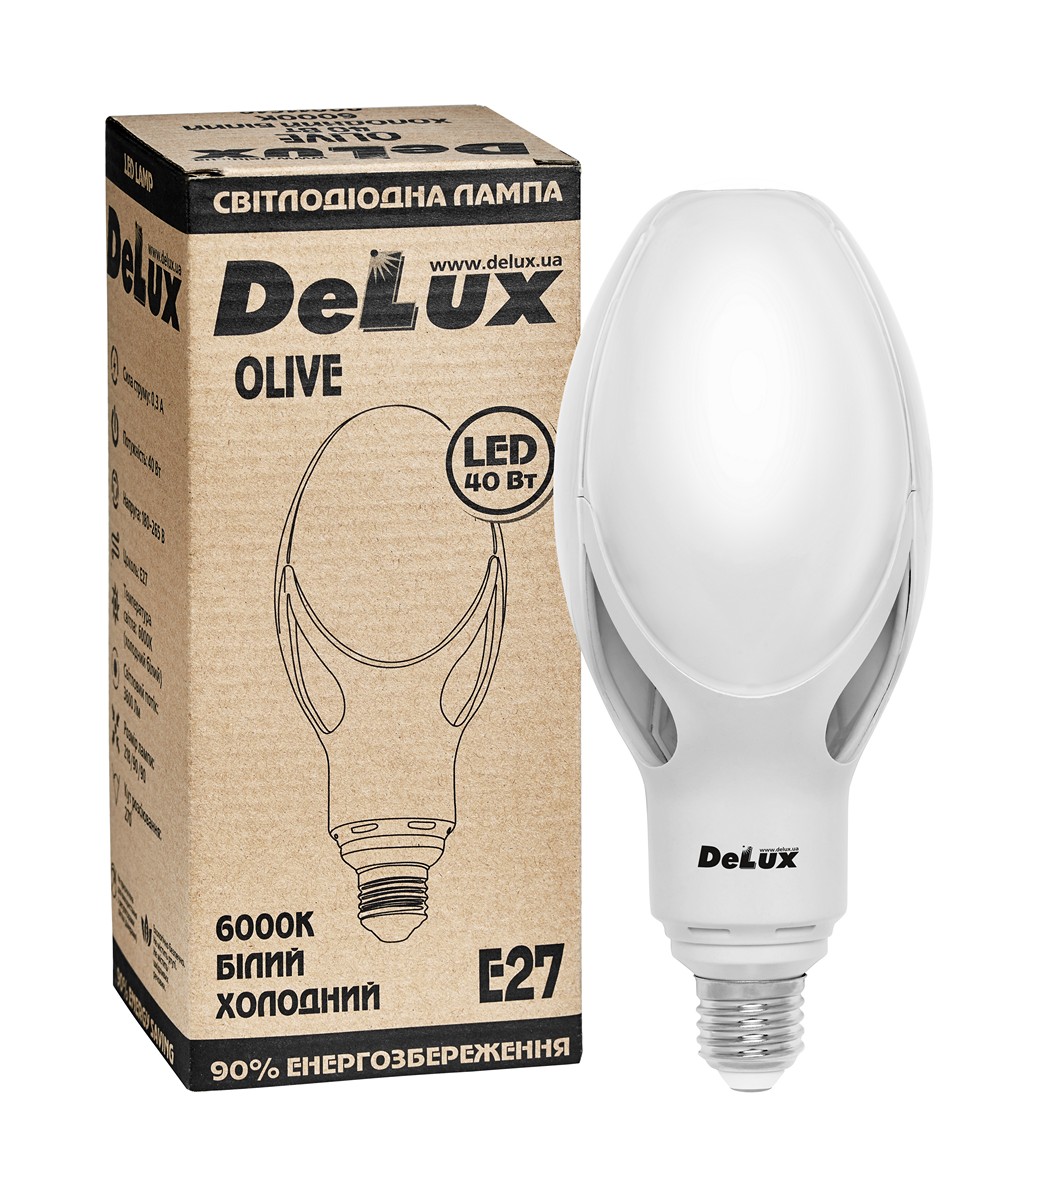 Лампа светодиодная Delux Olive E27 40W 6000K 3600lm 270° AC180V-265V